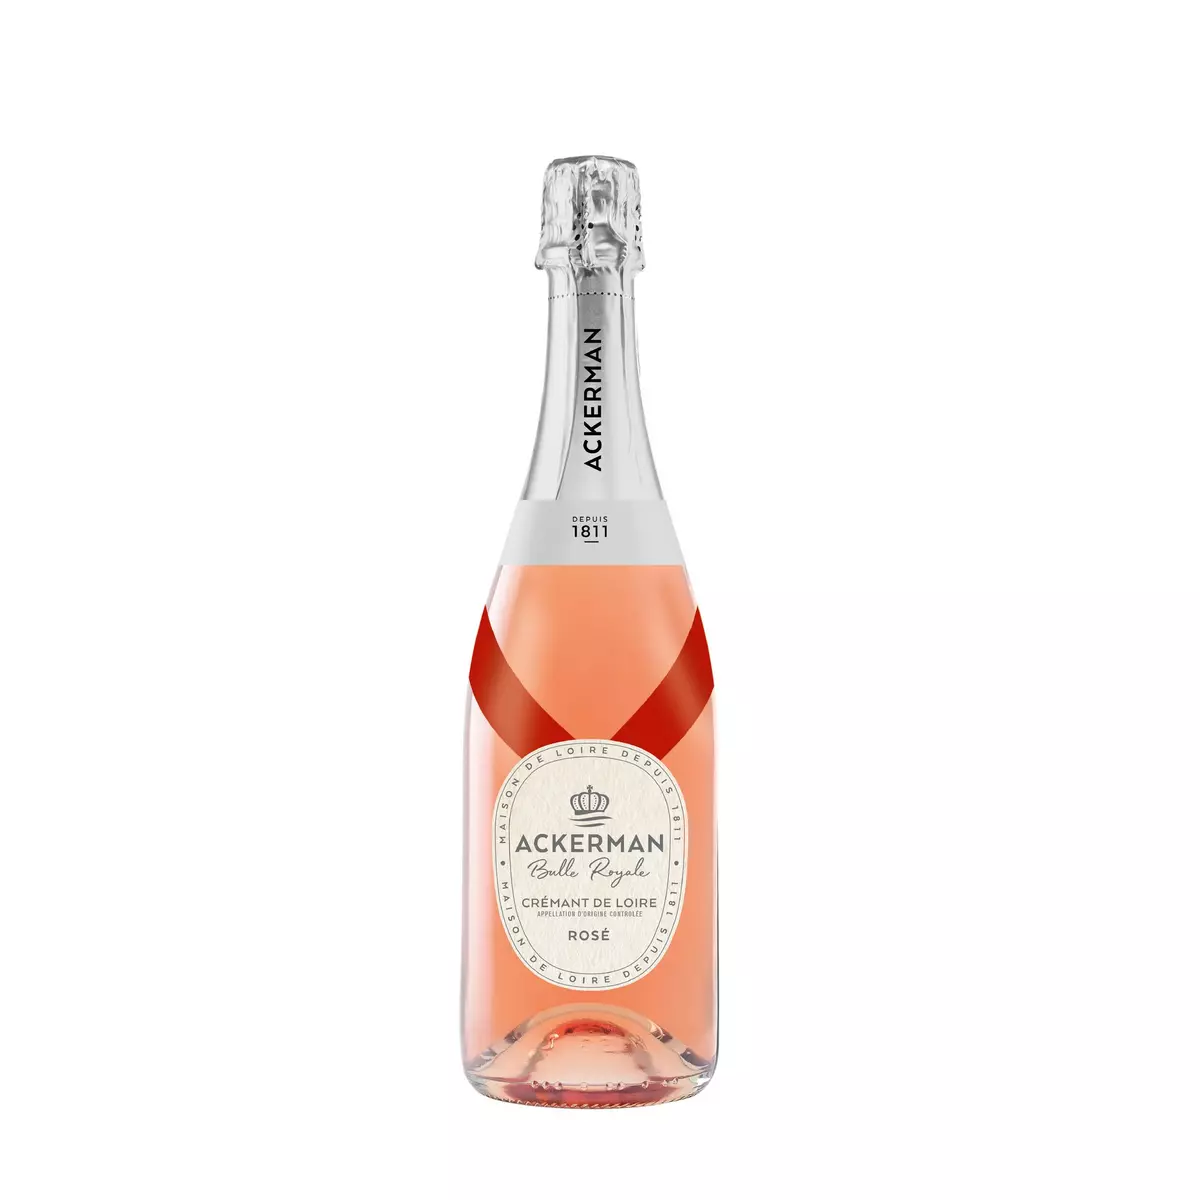 ACKERMAN Crémant de Loire Bulle Royale rosé 75cl